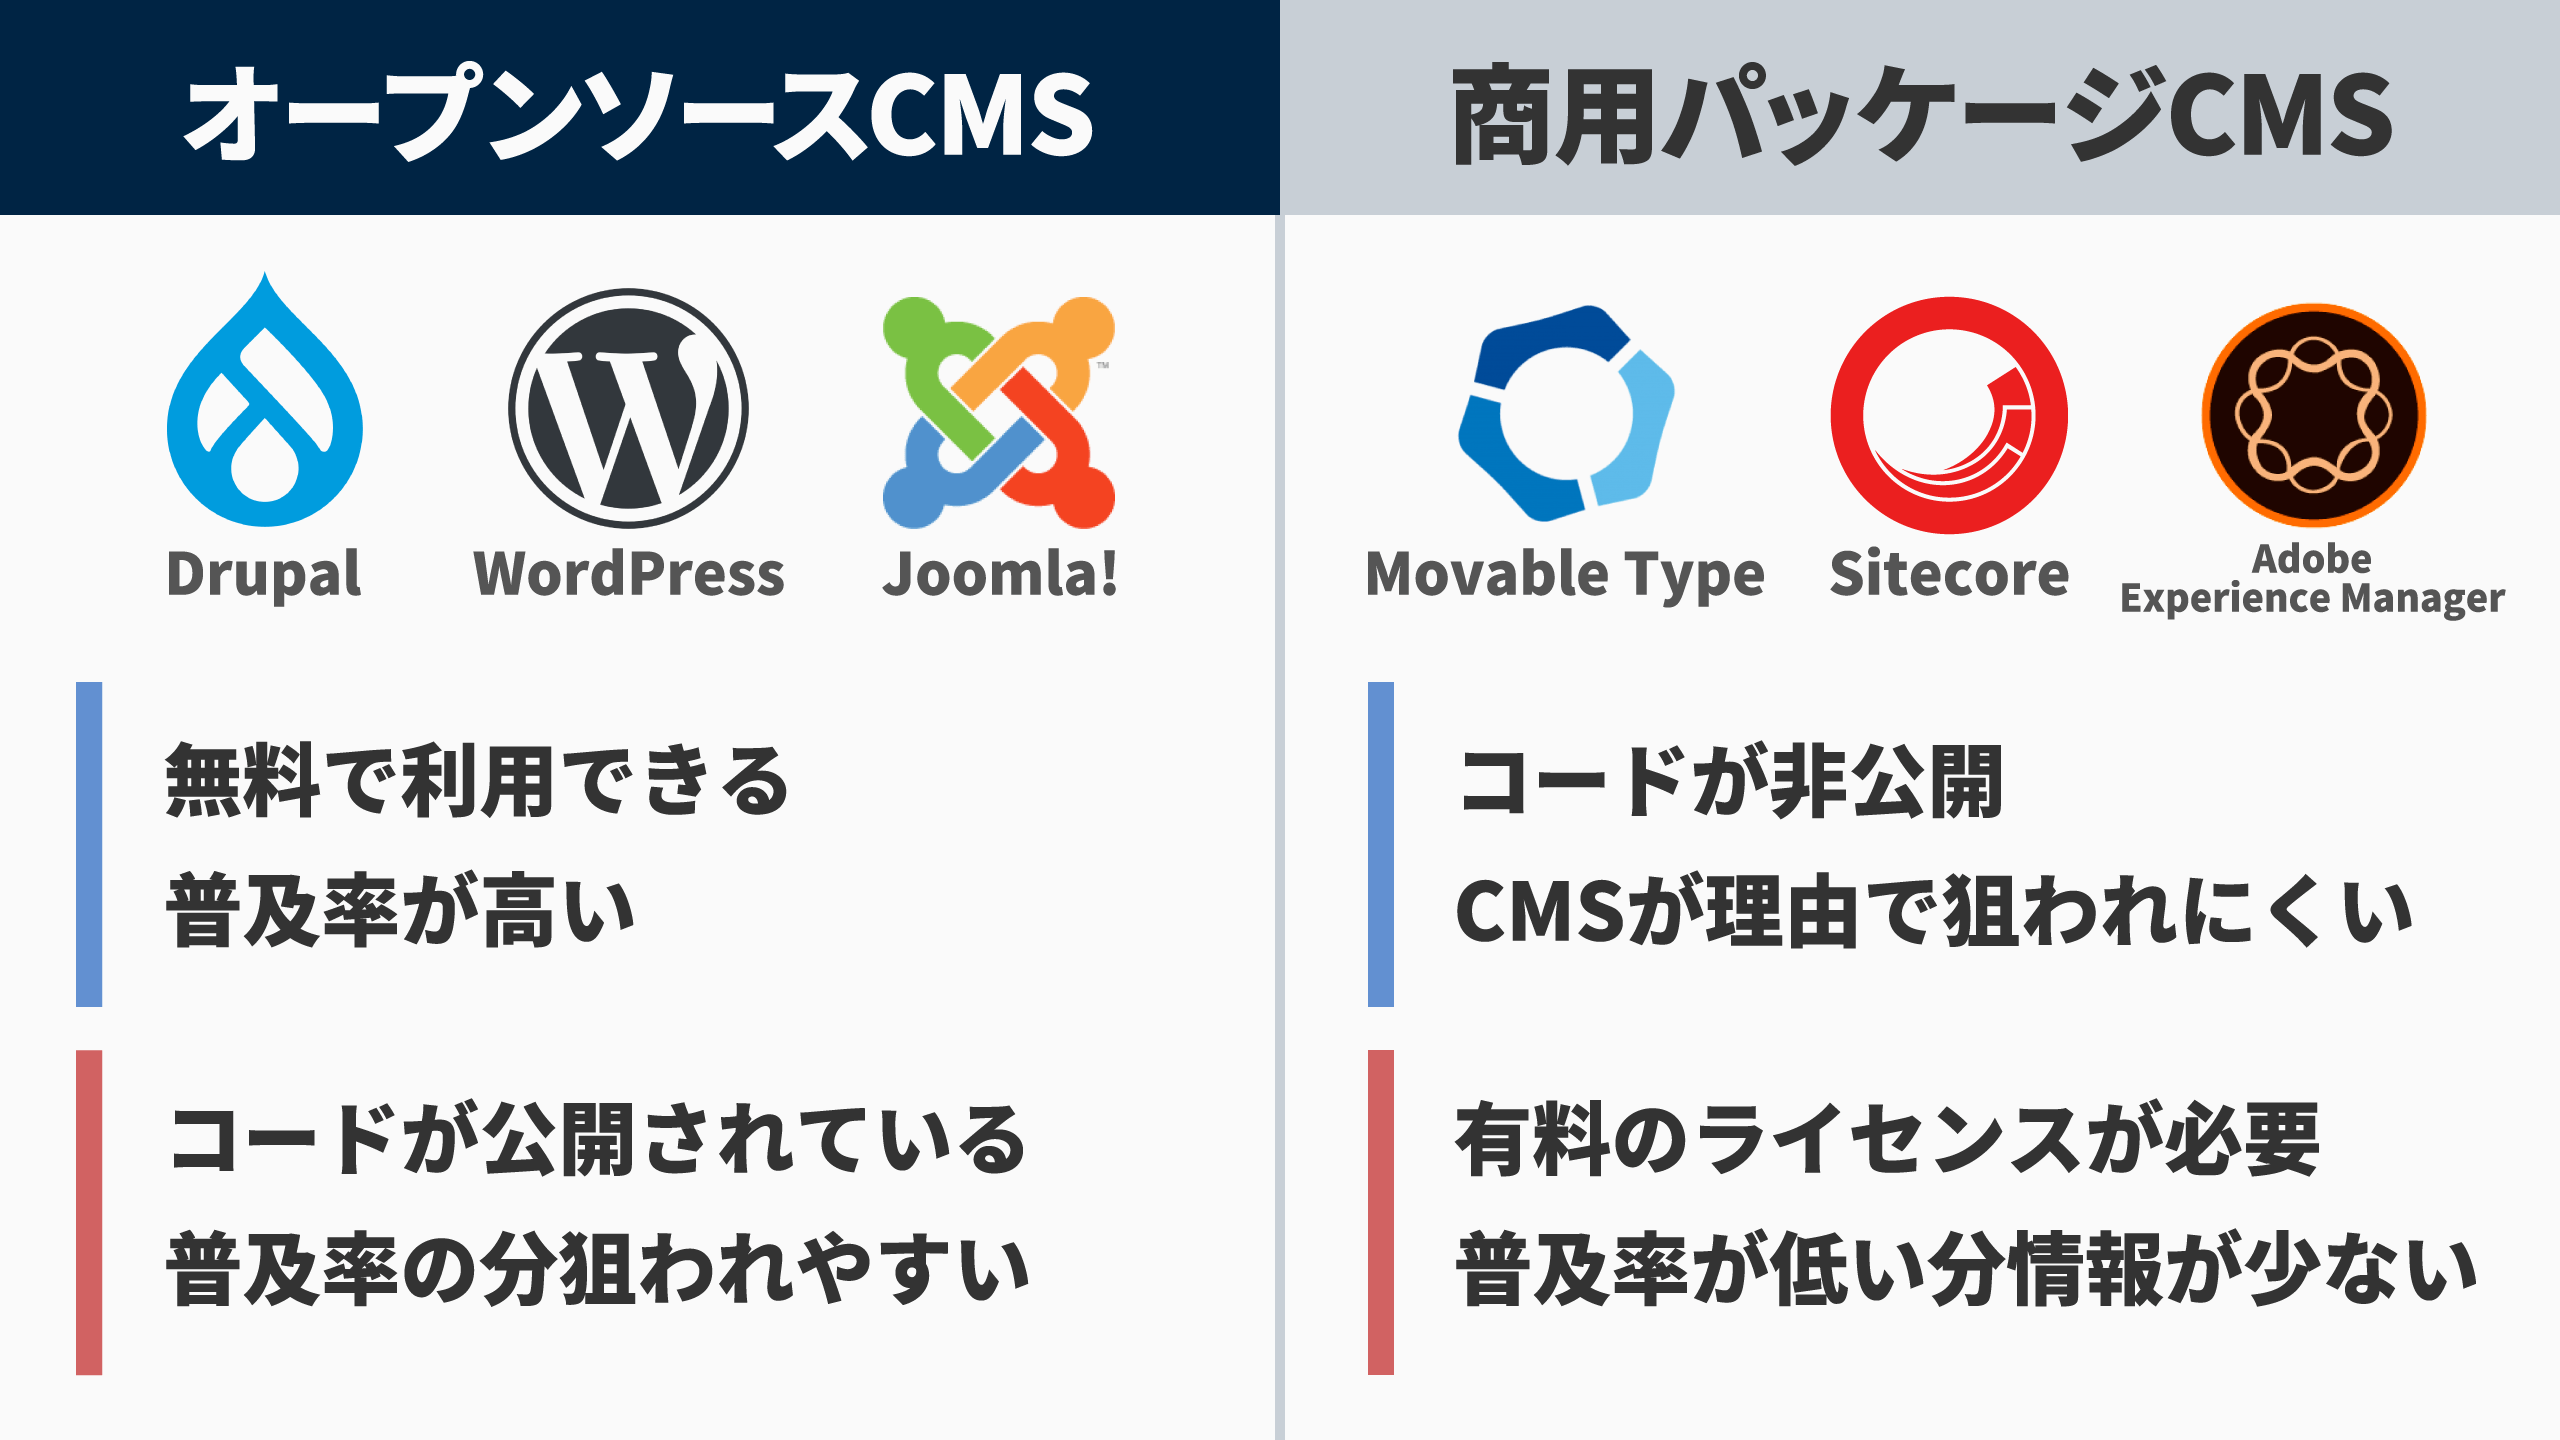 オープンソースCMS、例えばDrupal、WordPress、Joomla!などは無料で利用でき、普及率が高い。ただしコードが公開されていて普及率が高い分、狙われやすい。商用パッケージCMS、例えばMobable TypeやNOREN、Site Coreなどはソースコードが非公開で狙われにくい分、有料でCMSの購入が必要なこと、普及率が低い分情報が少ないといったデメリットもあります。